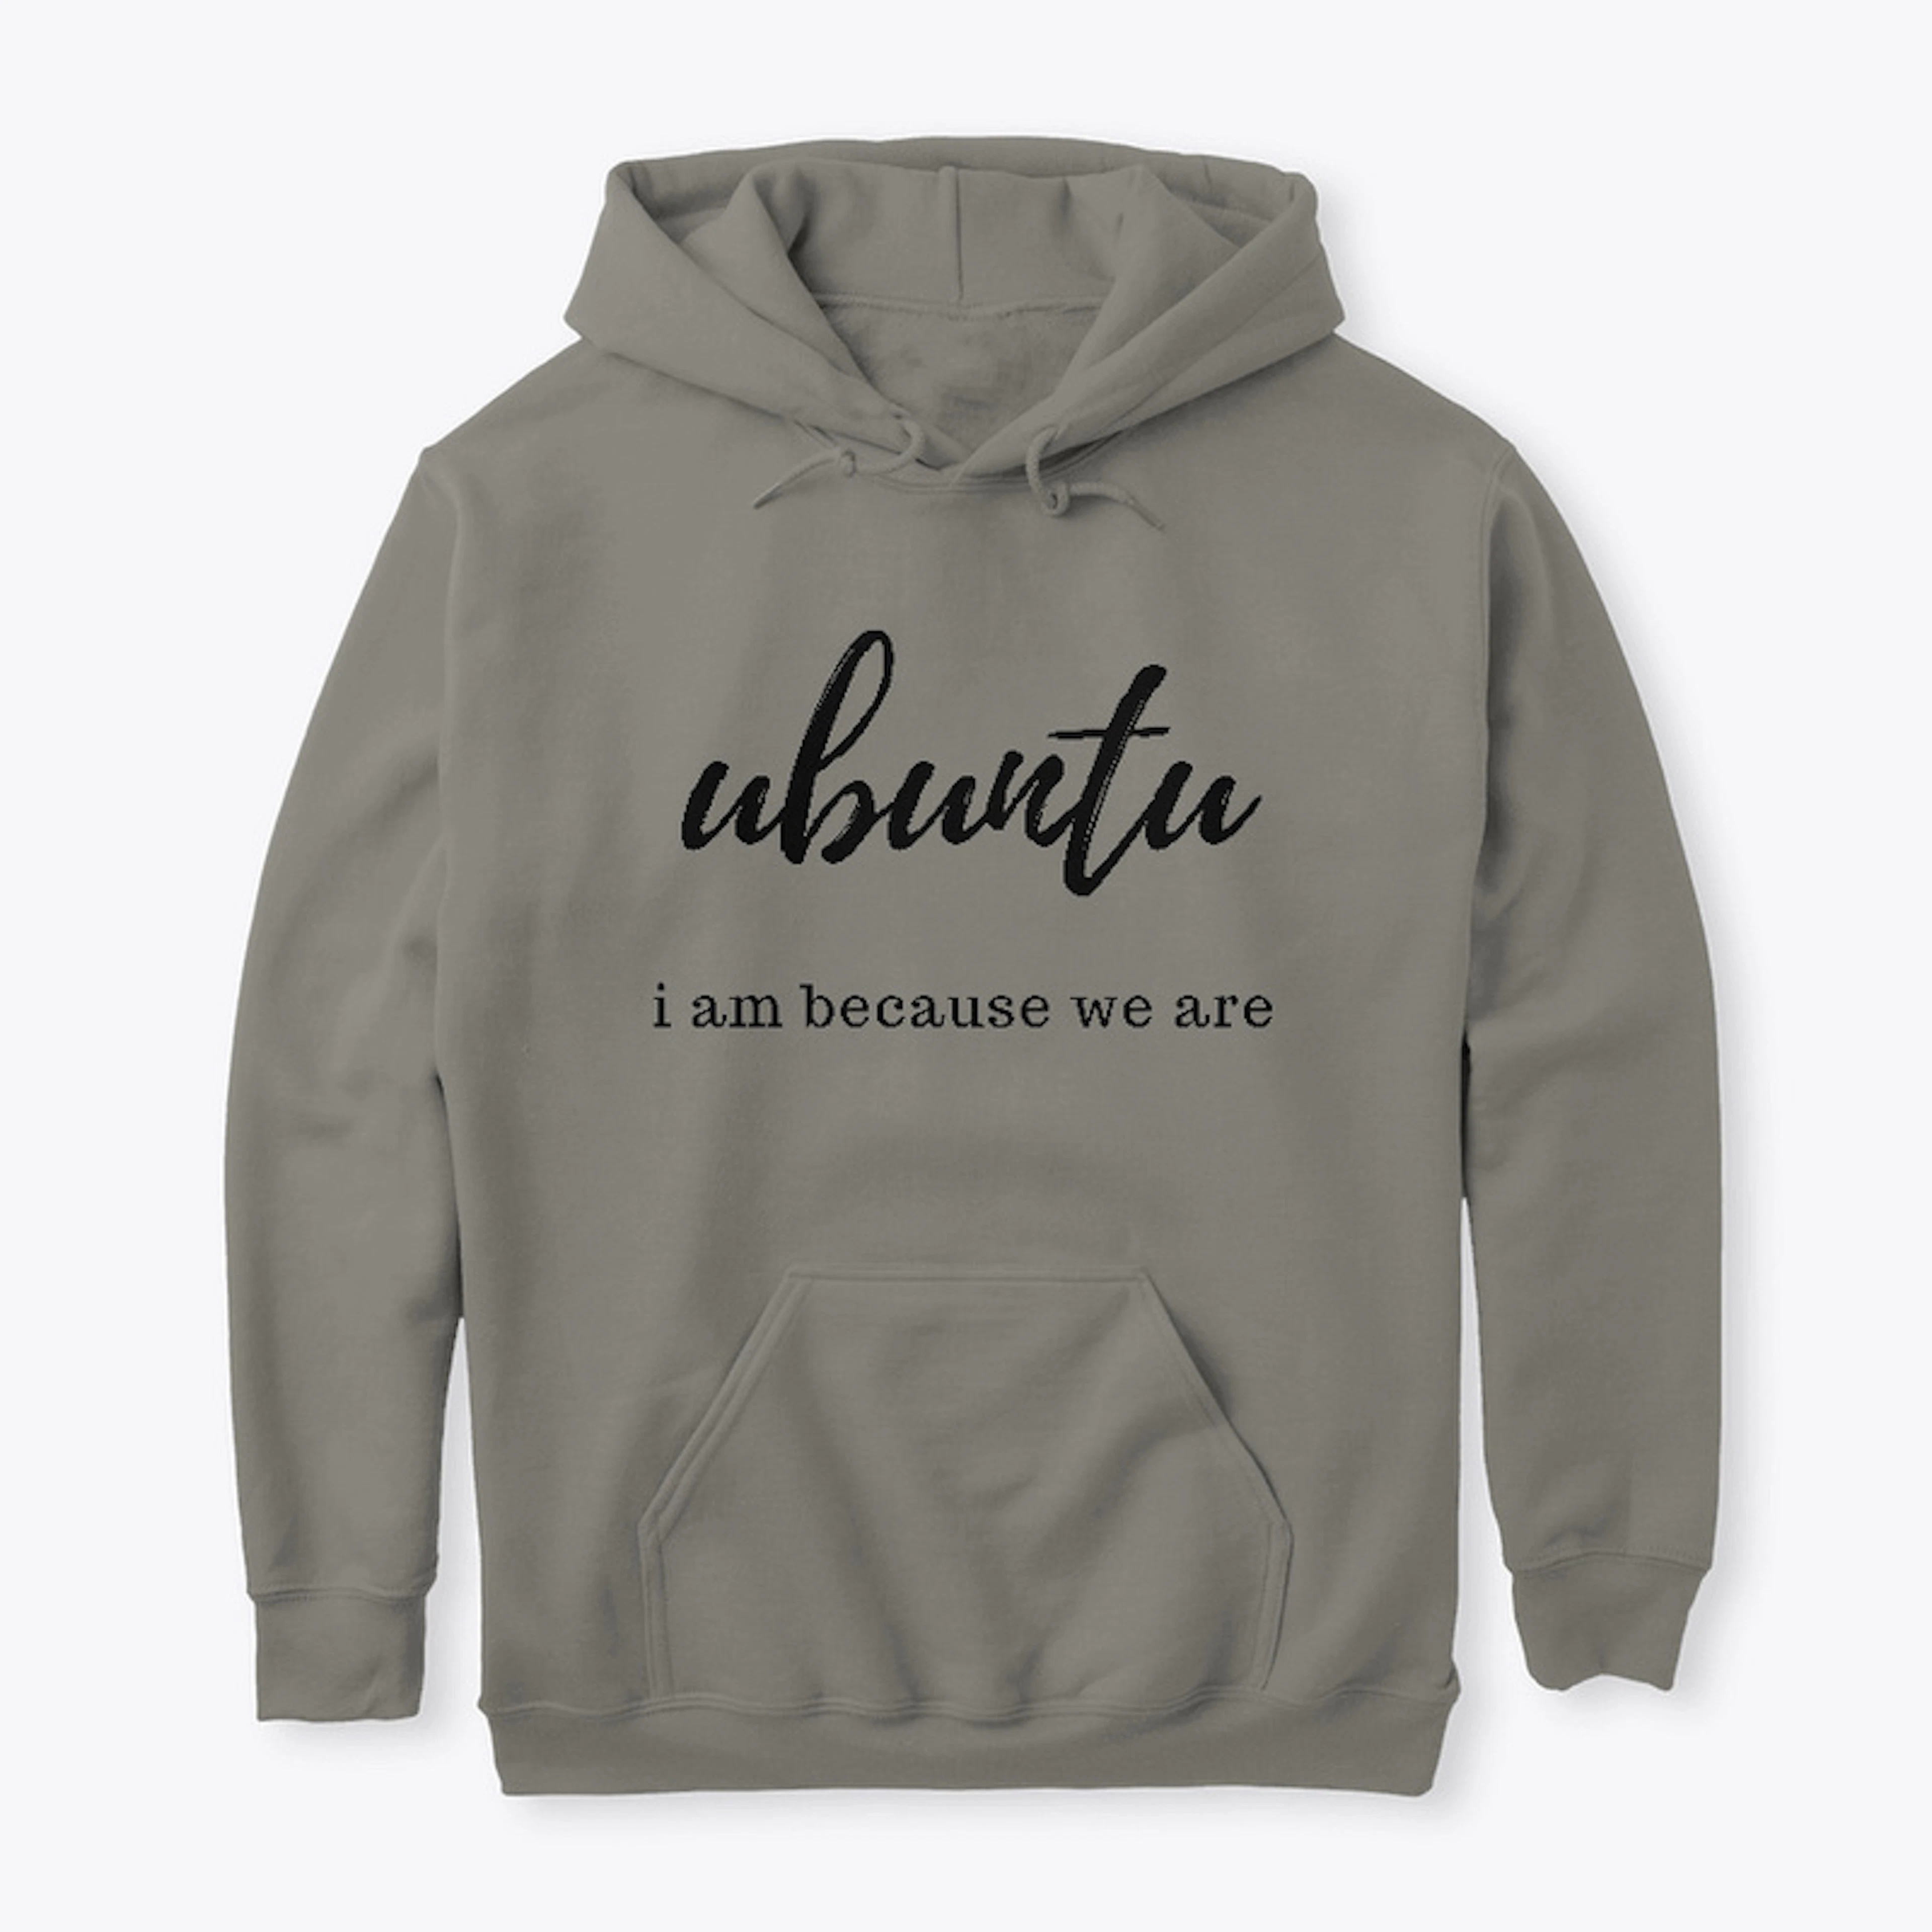 Ubuntu - i am because we are